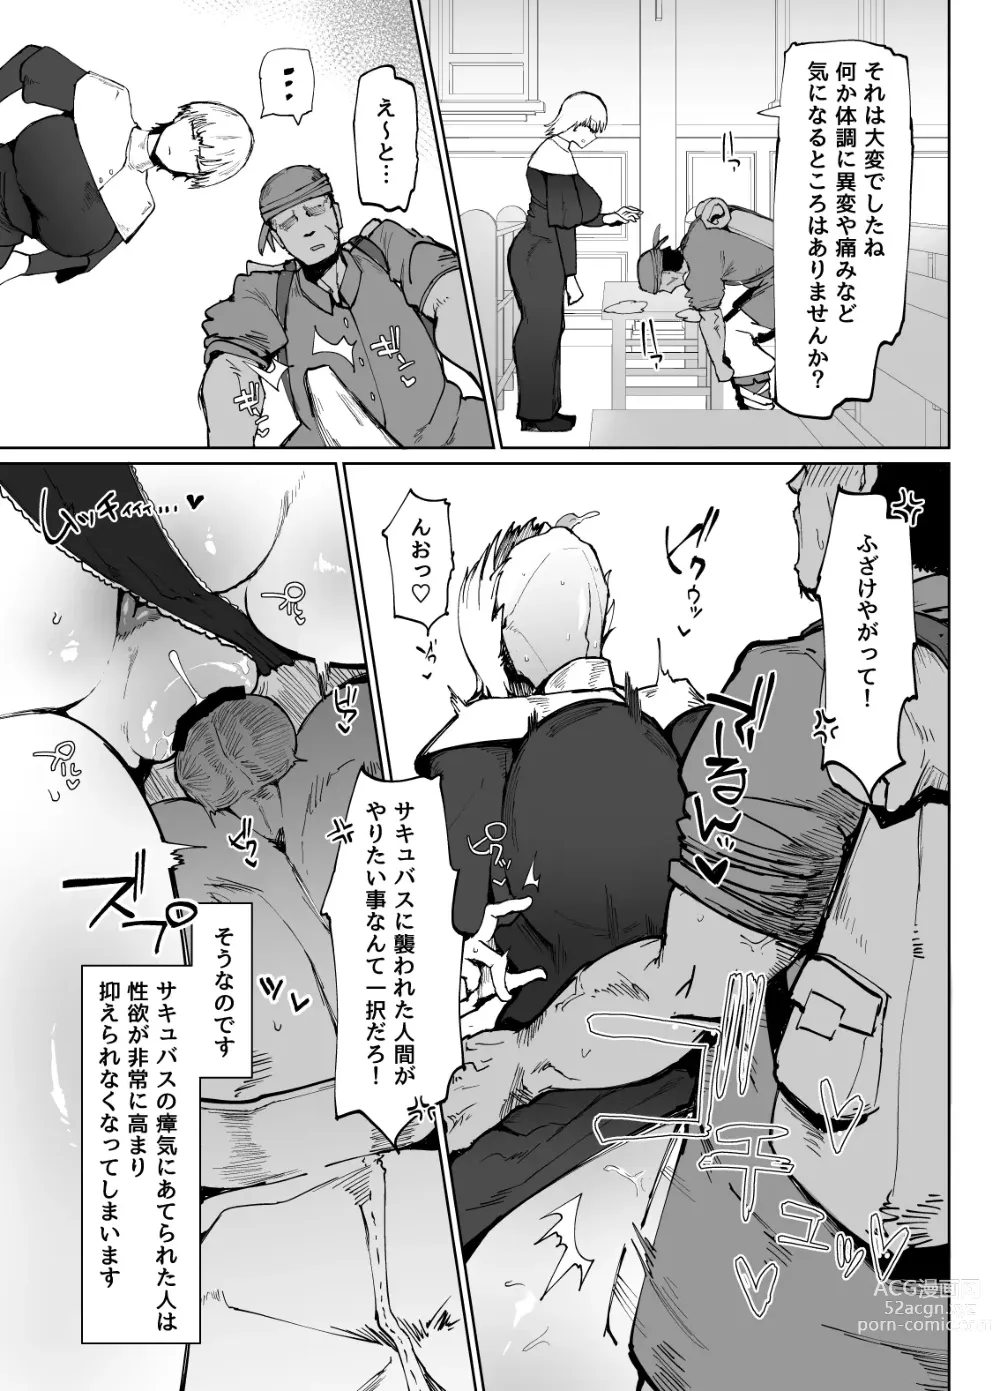 Page 12 of doujinshi Itome de Dekaketsu de Zettai ni Haramanai Onahoshisutā